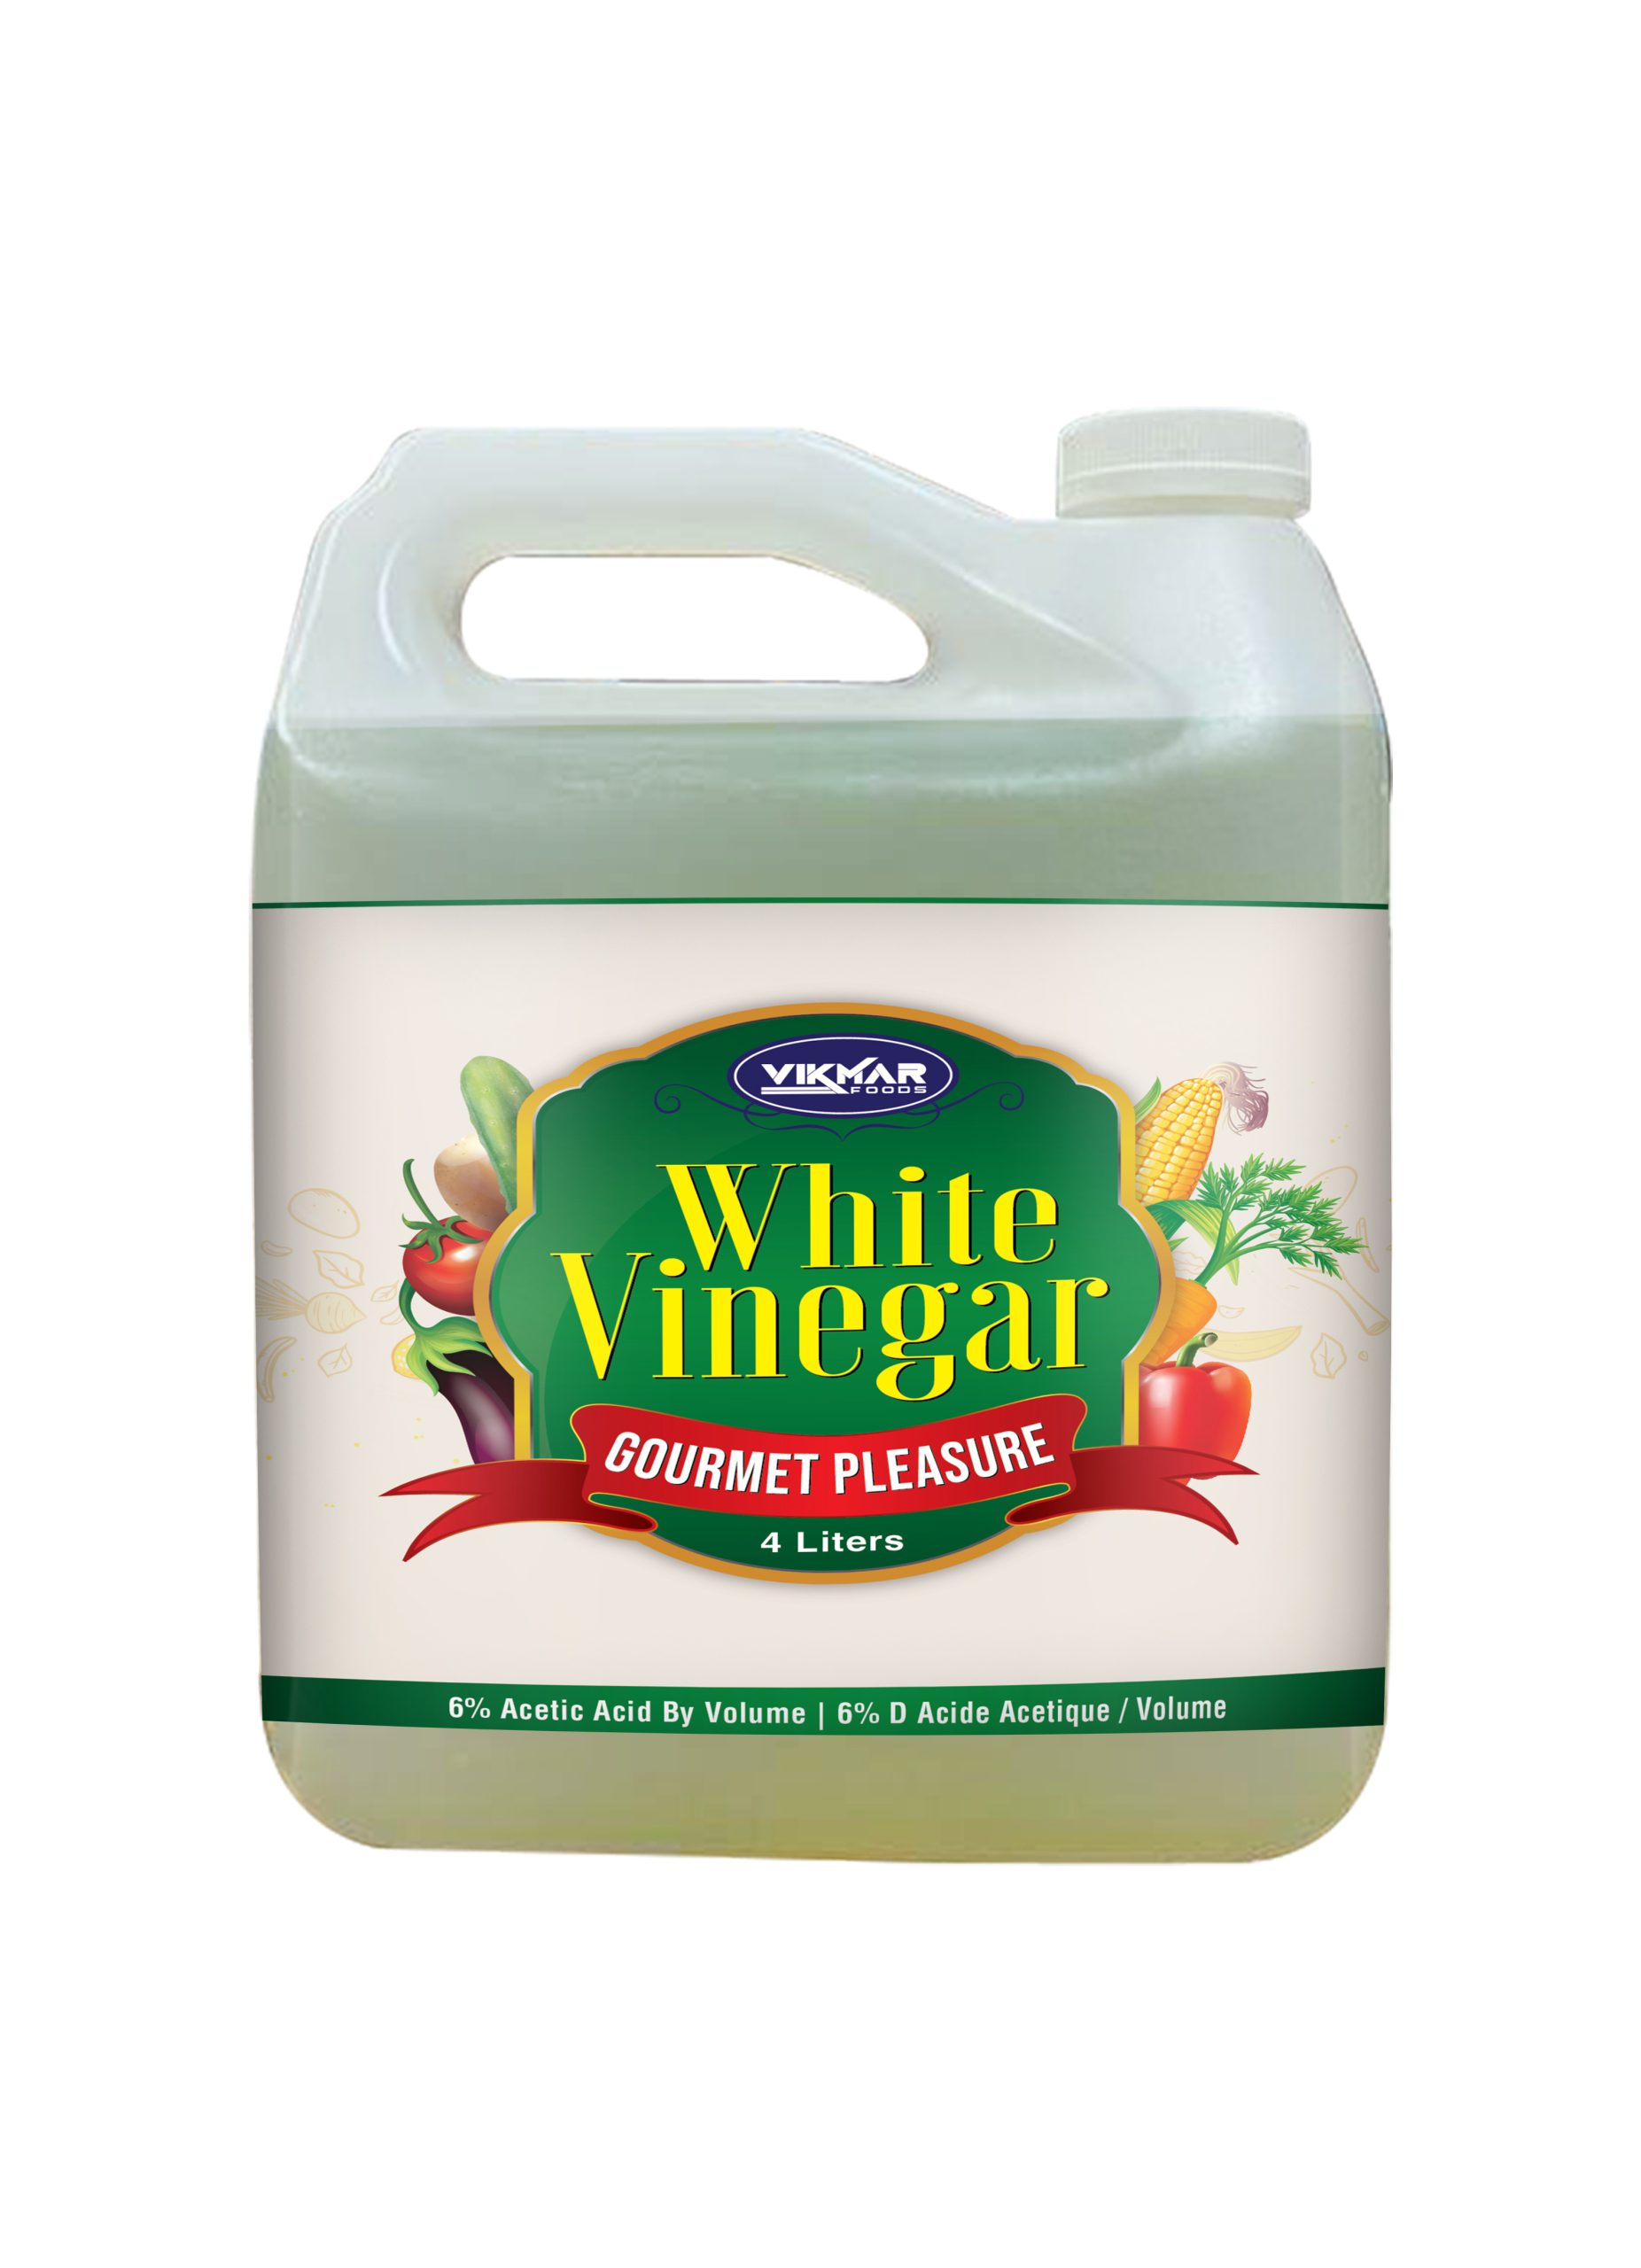 White vinegar 4 litres bottle